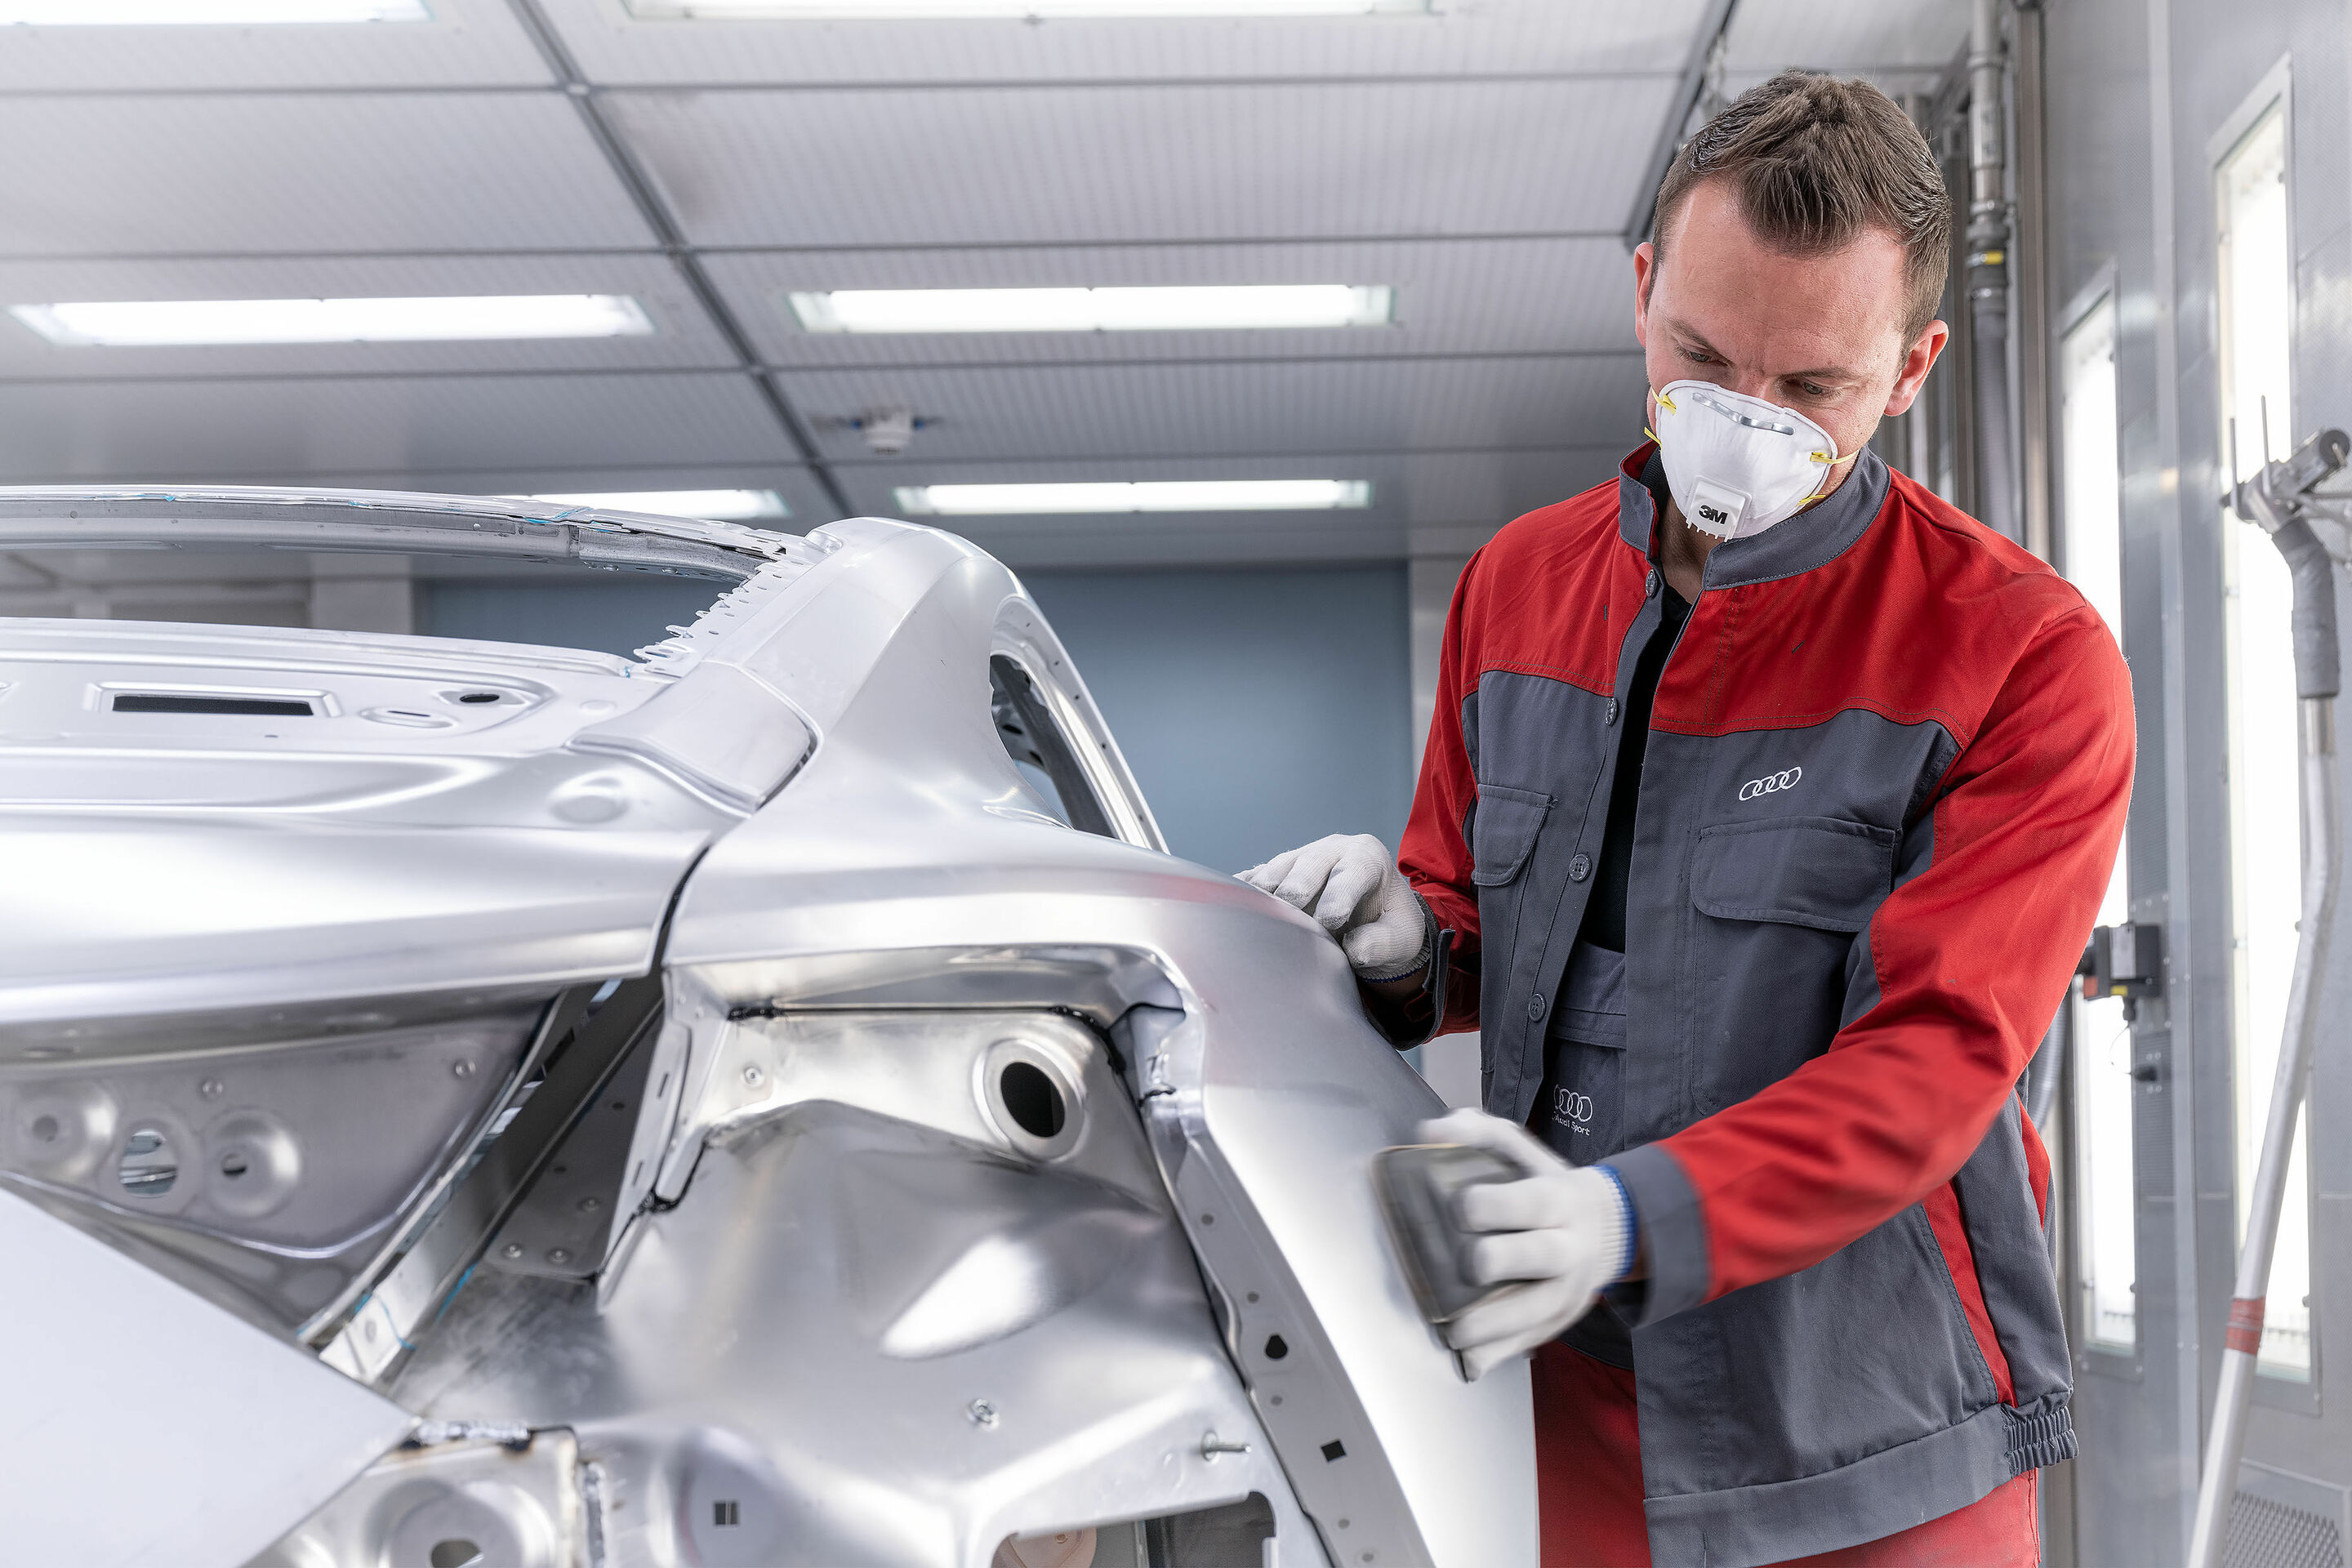 Audi e-tron GT enters series production: Carbon-neutral production begins at the Böllinger Höfe